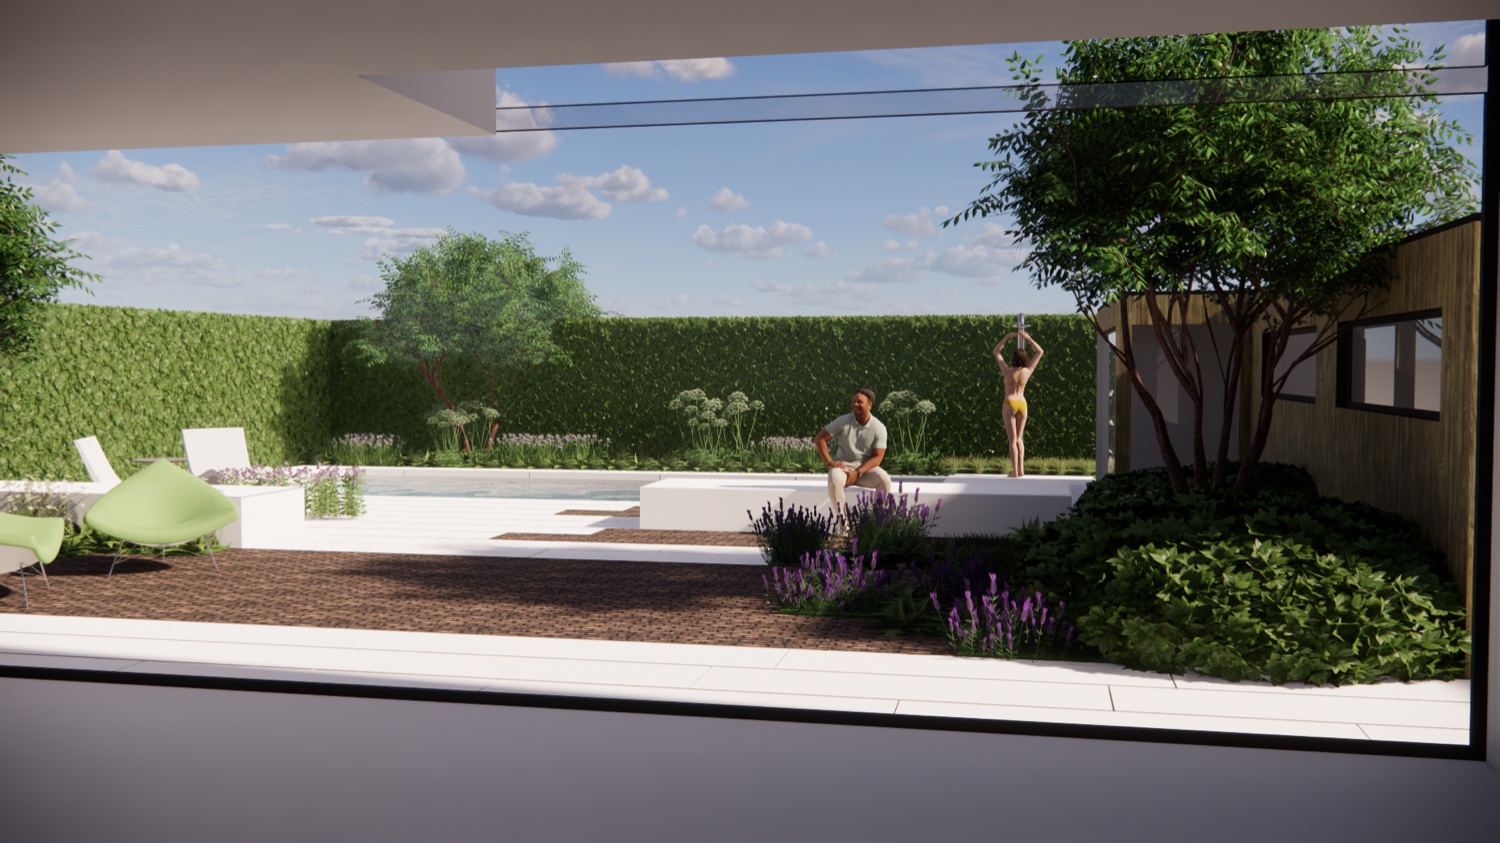 onze tuinarchotect en zwembadspecialist ontwerpt voor u het ideale zwembad voor uw tuin